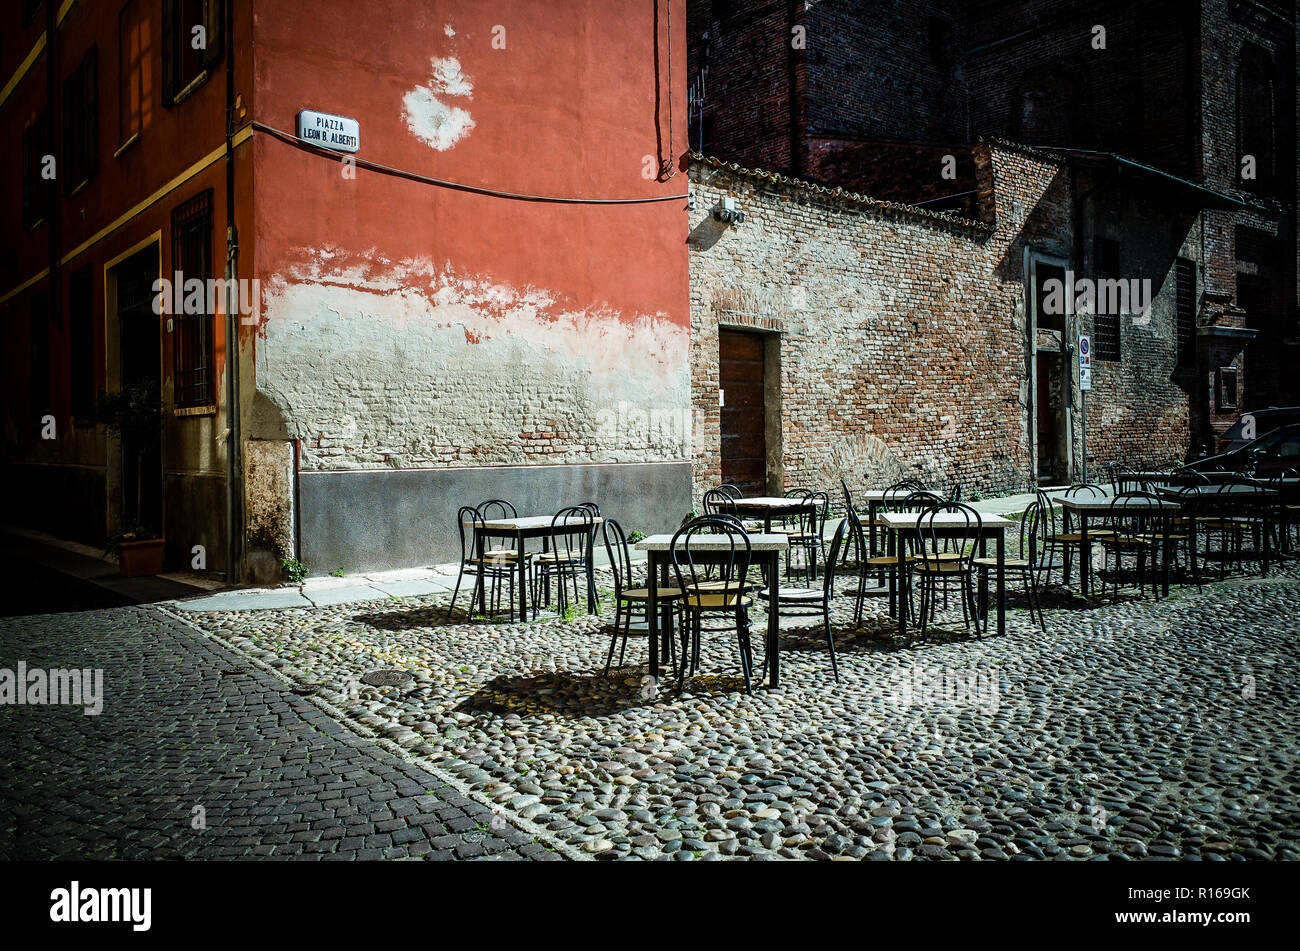 L'espace extérieur d'un café dans le quartier historique de Mantoue, Italie Banque D'Images